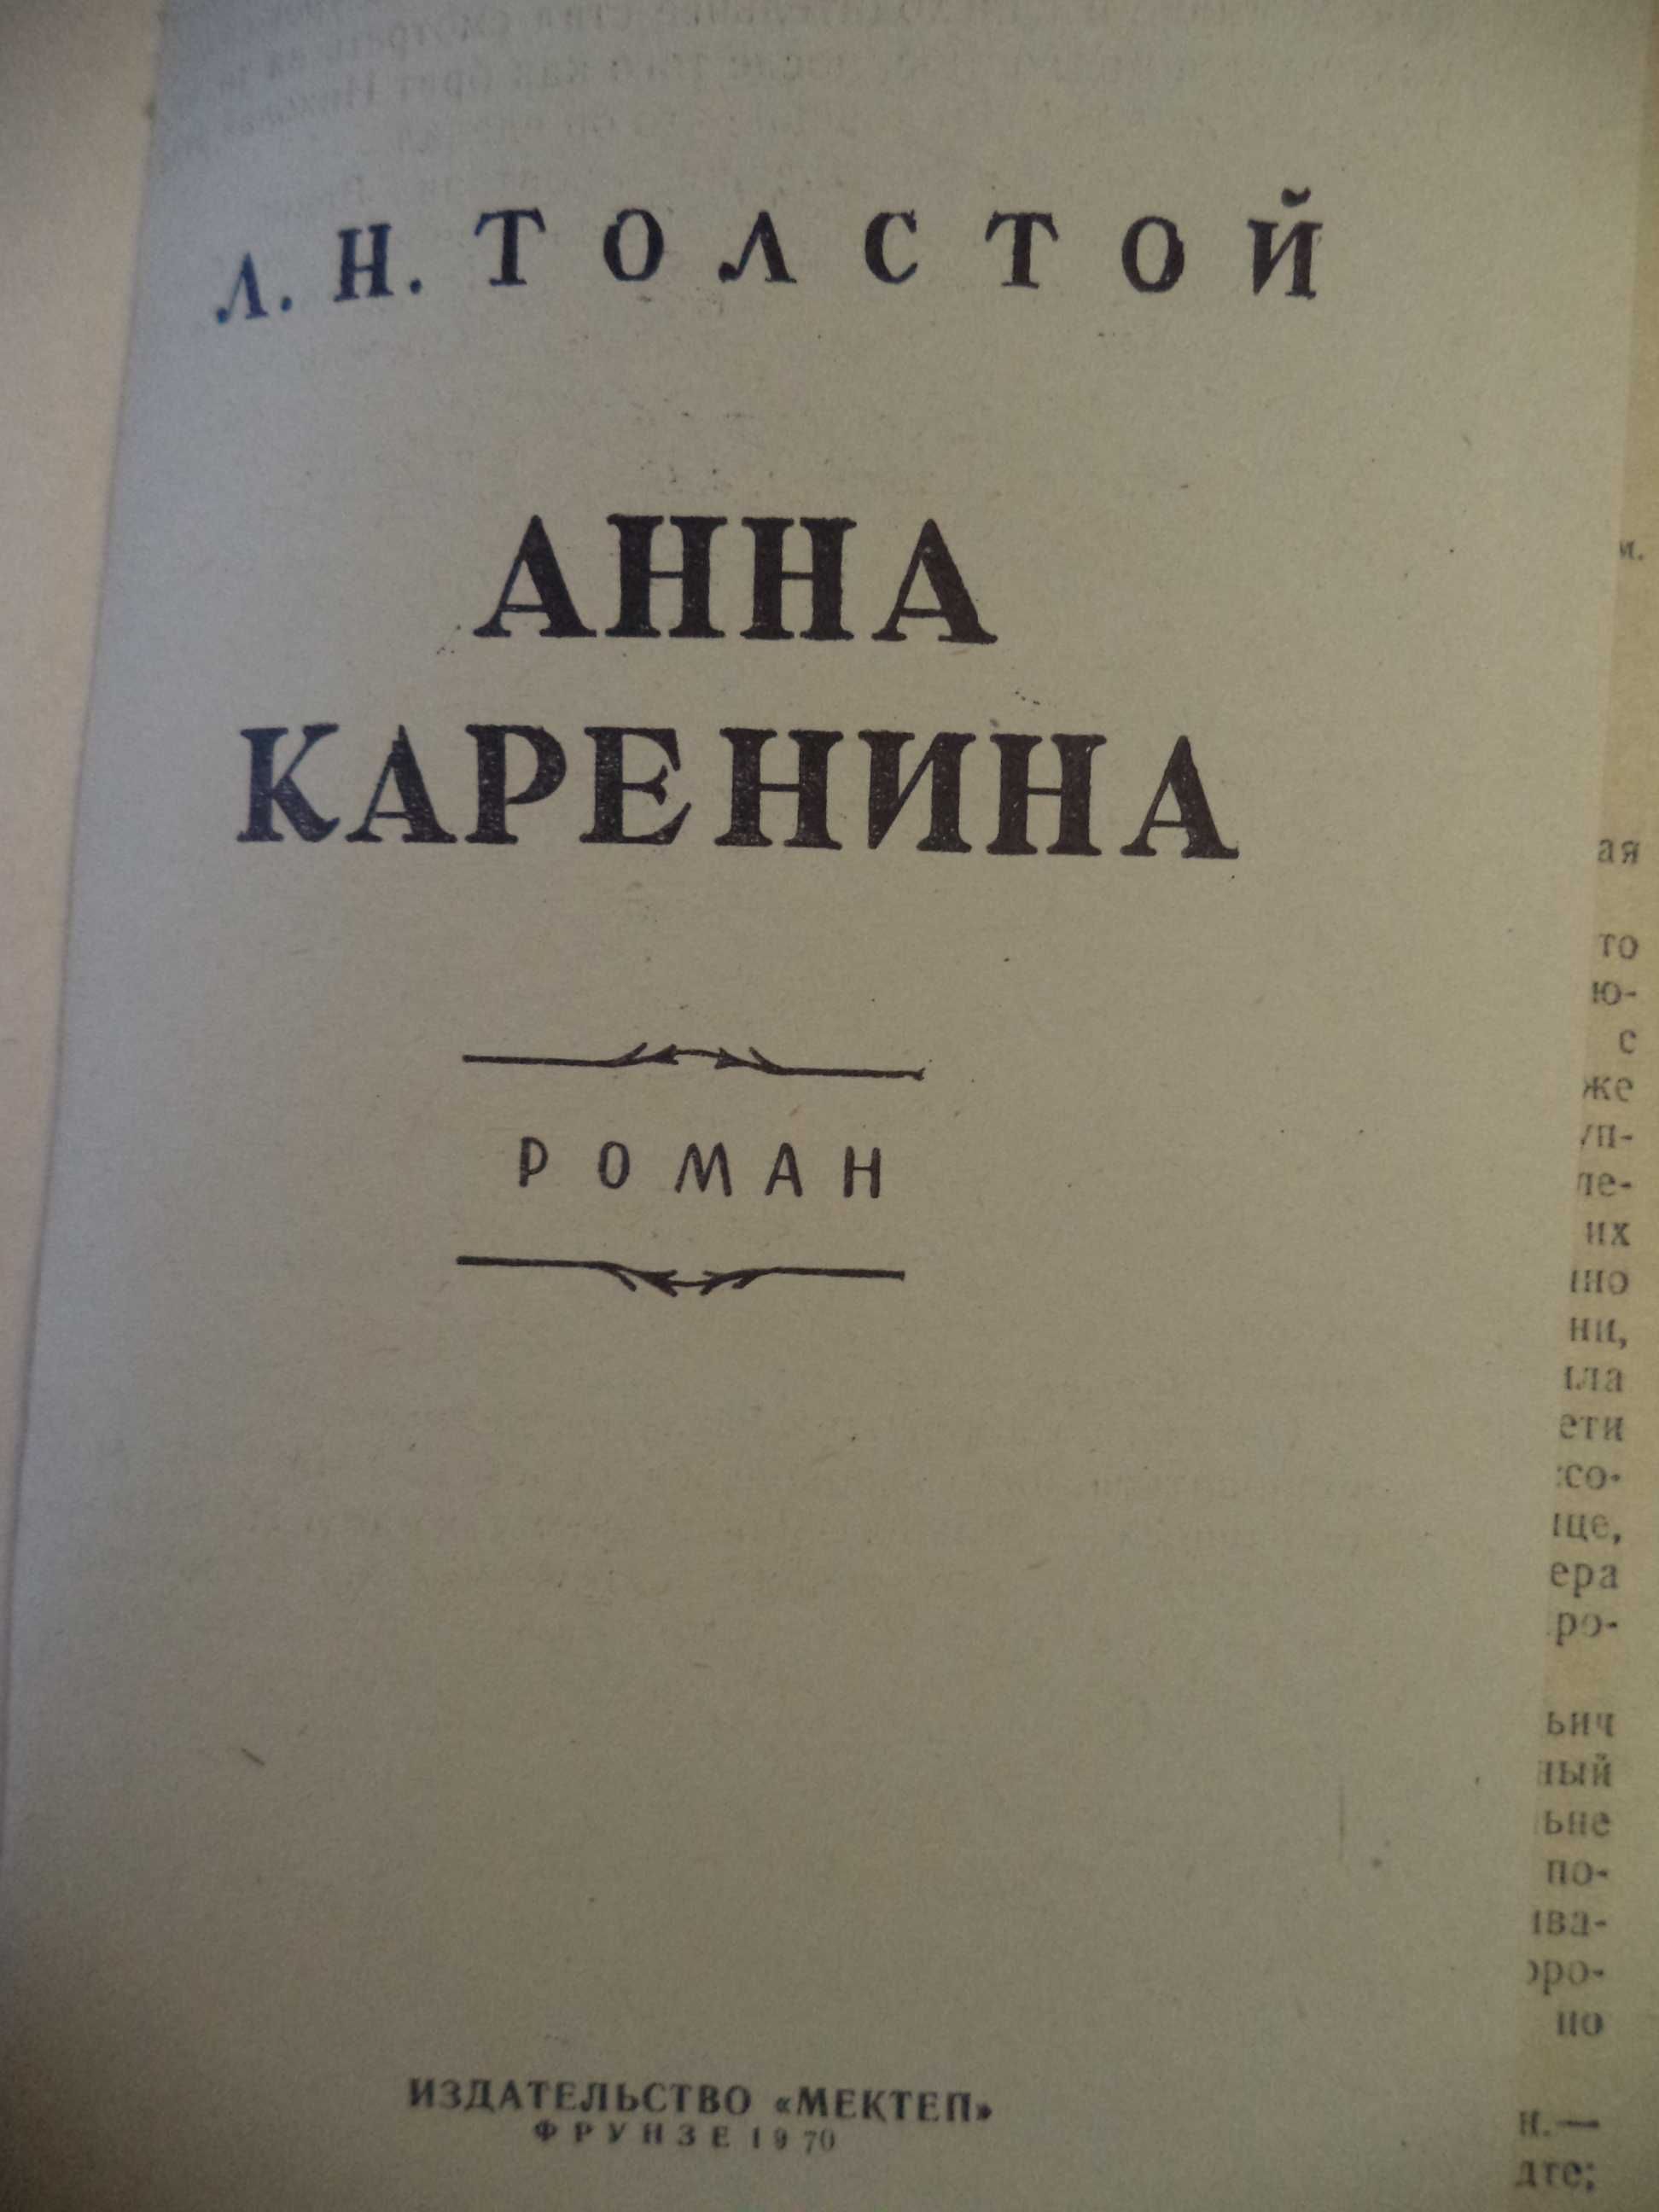 Однотомник  Льва Толстого «Анна Каренина», 1970 г. изд.